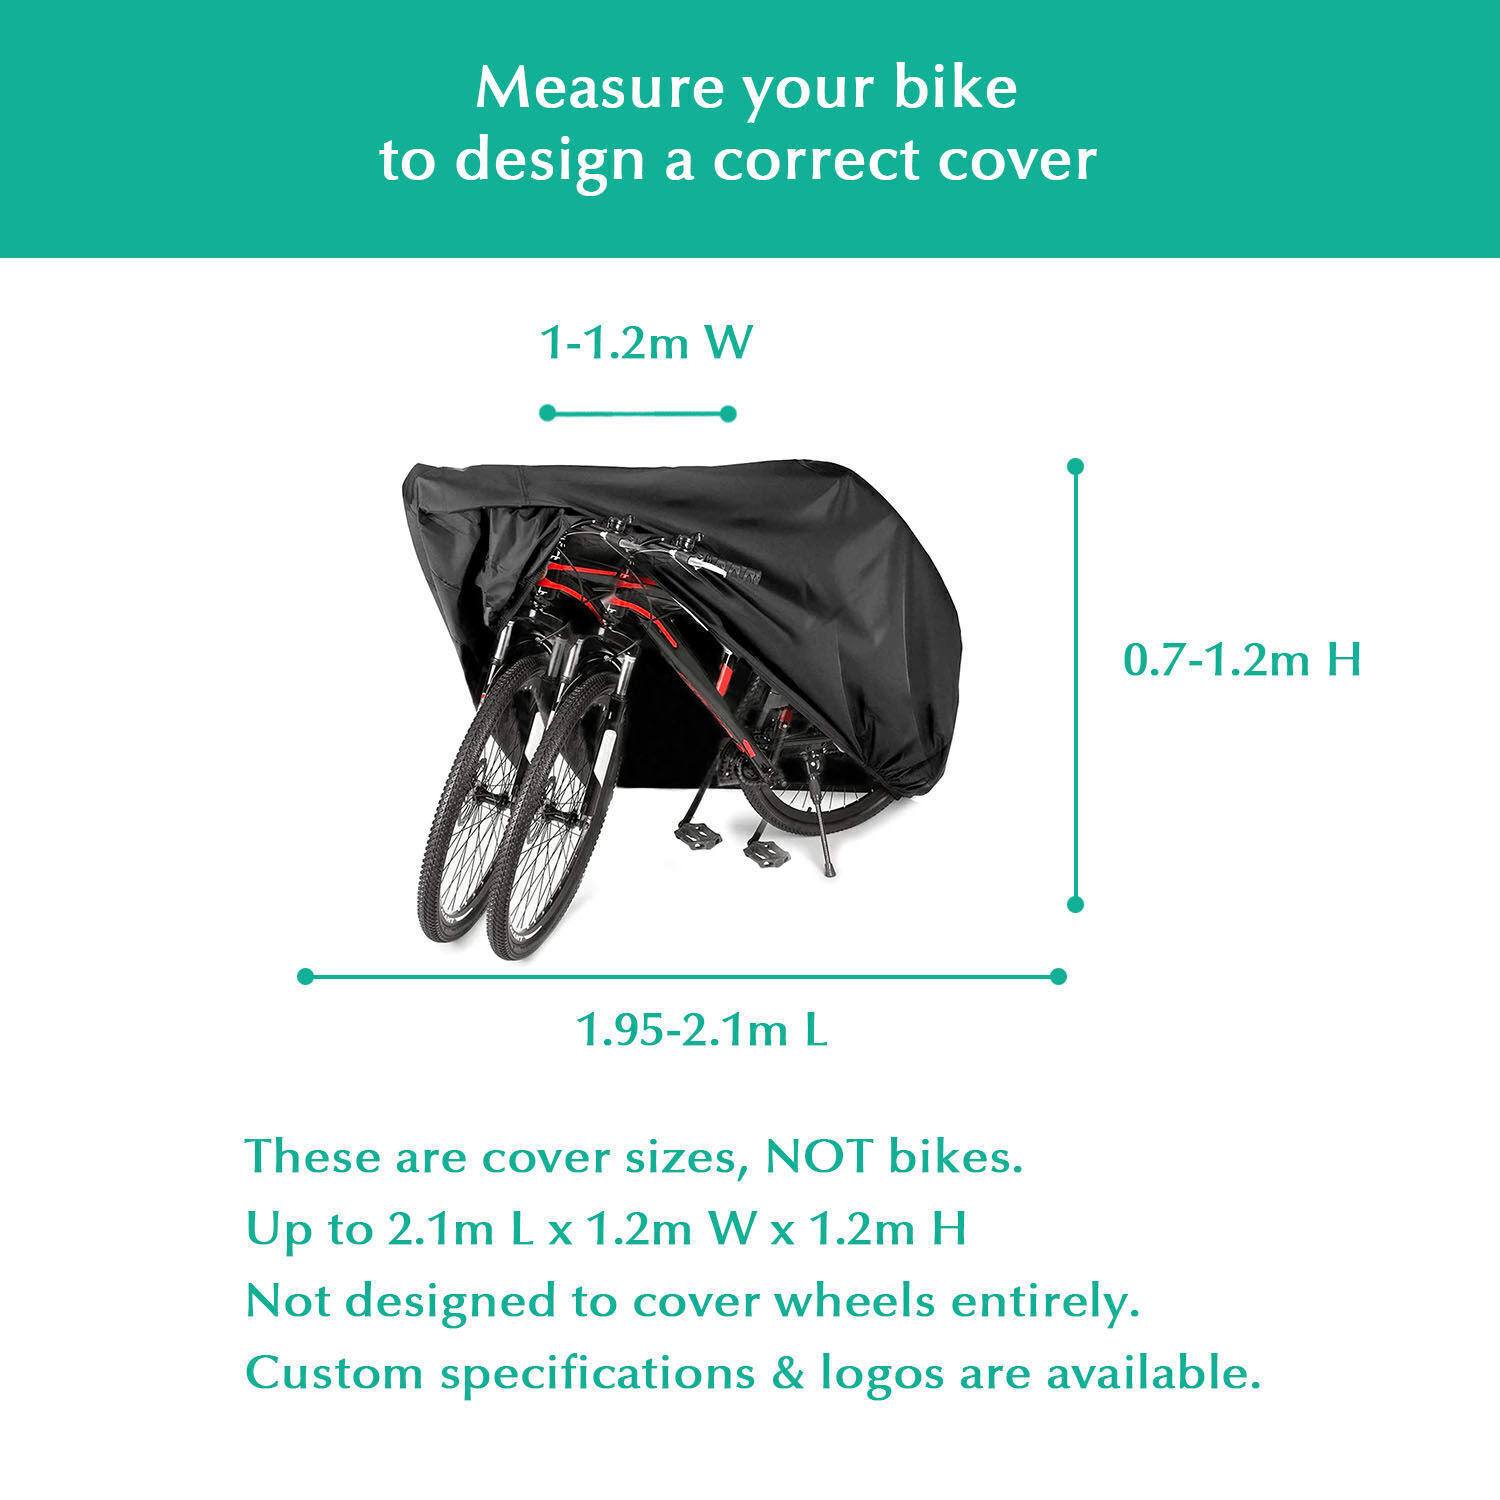 Housse Velo Exterieur Anti-UV Protection Poussière Résistant Impermeable  Pluie pour de Vélo Bicyclette Cycle Scooter